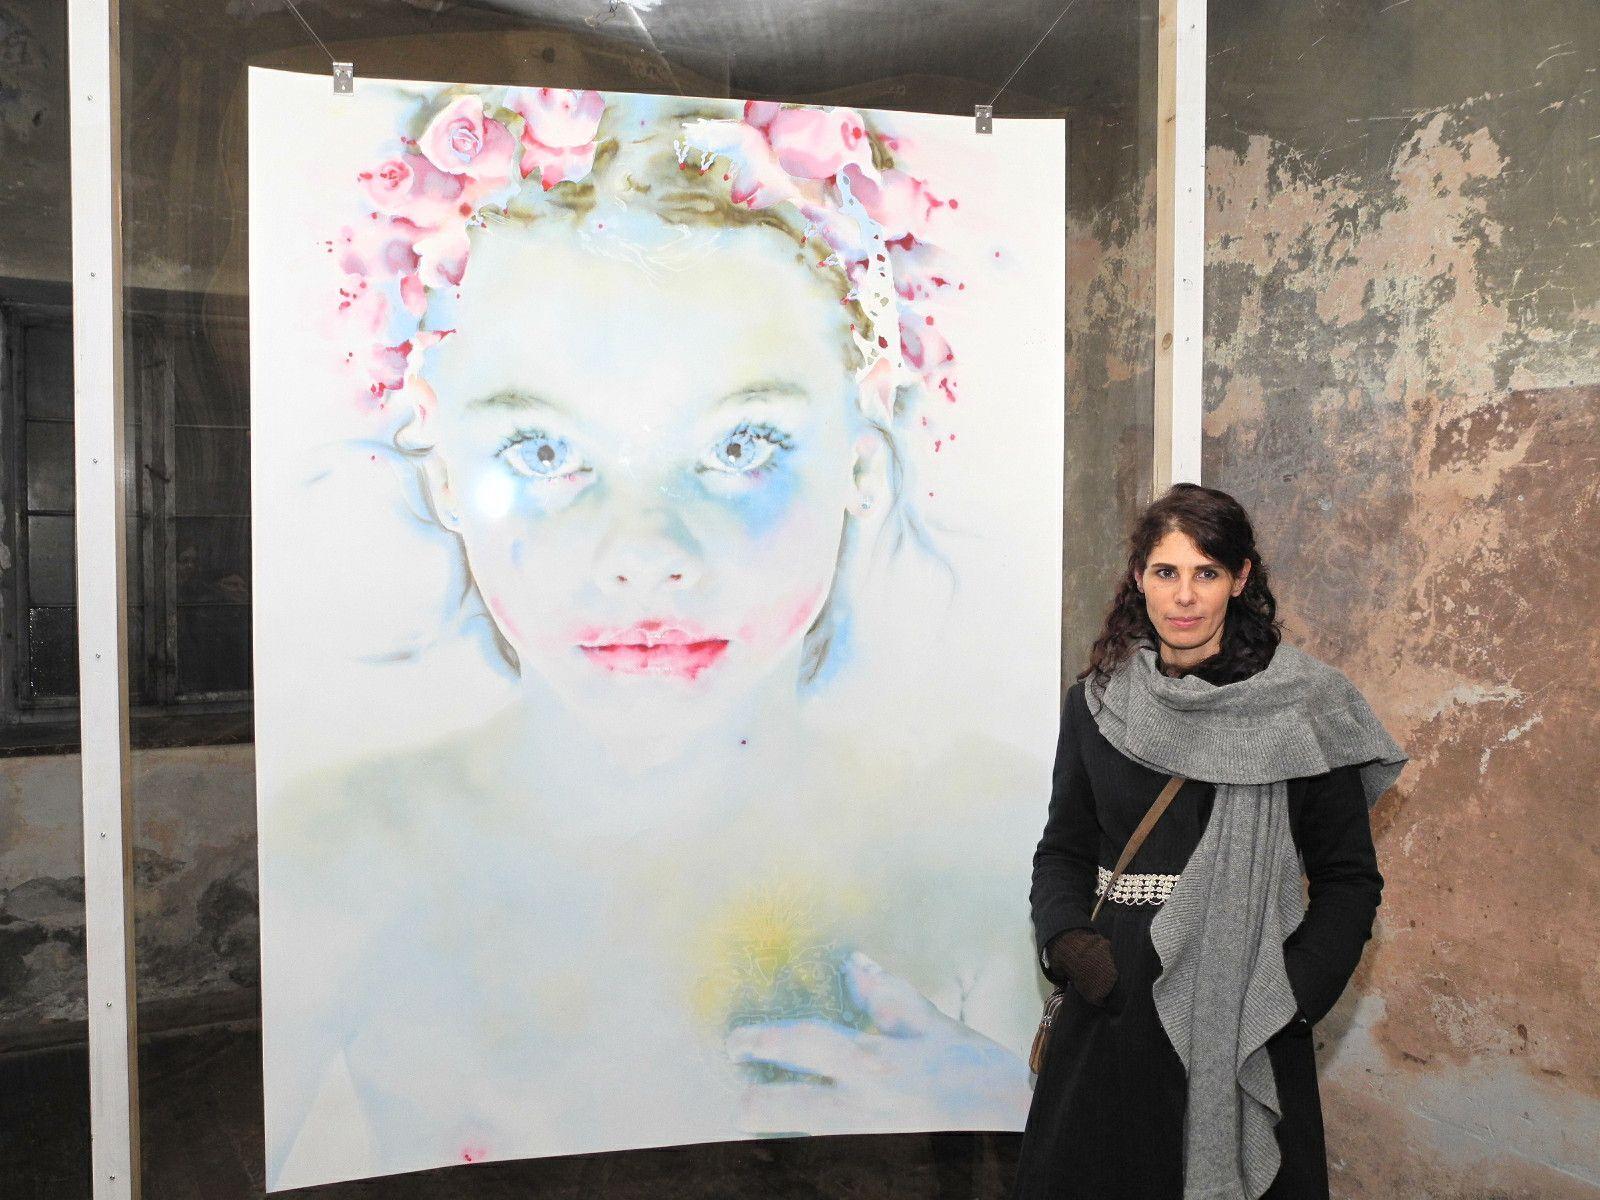 Hanna Nitsch zeigt in der Johanniterkirche die Installation "Elisabeth", die Künstlerin mit dem Bild ihrer Tochter Eleisabeth